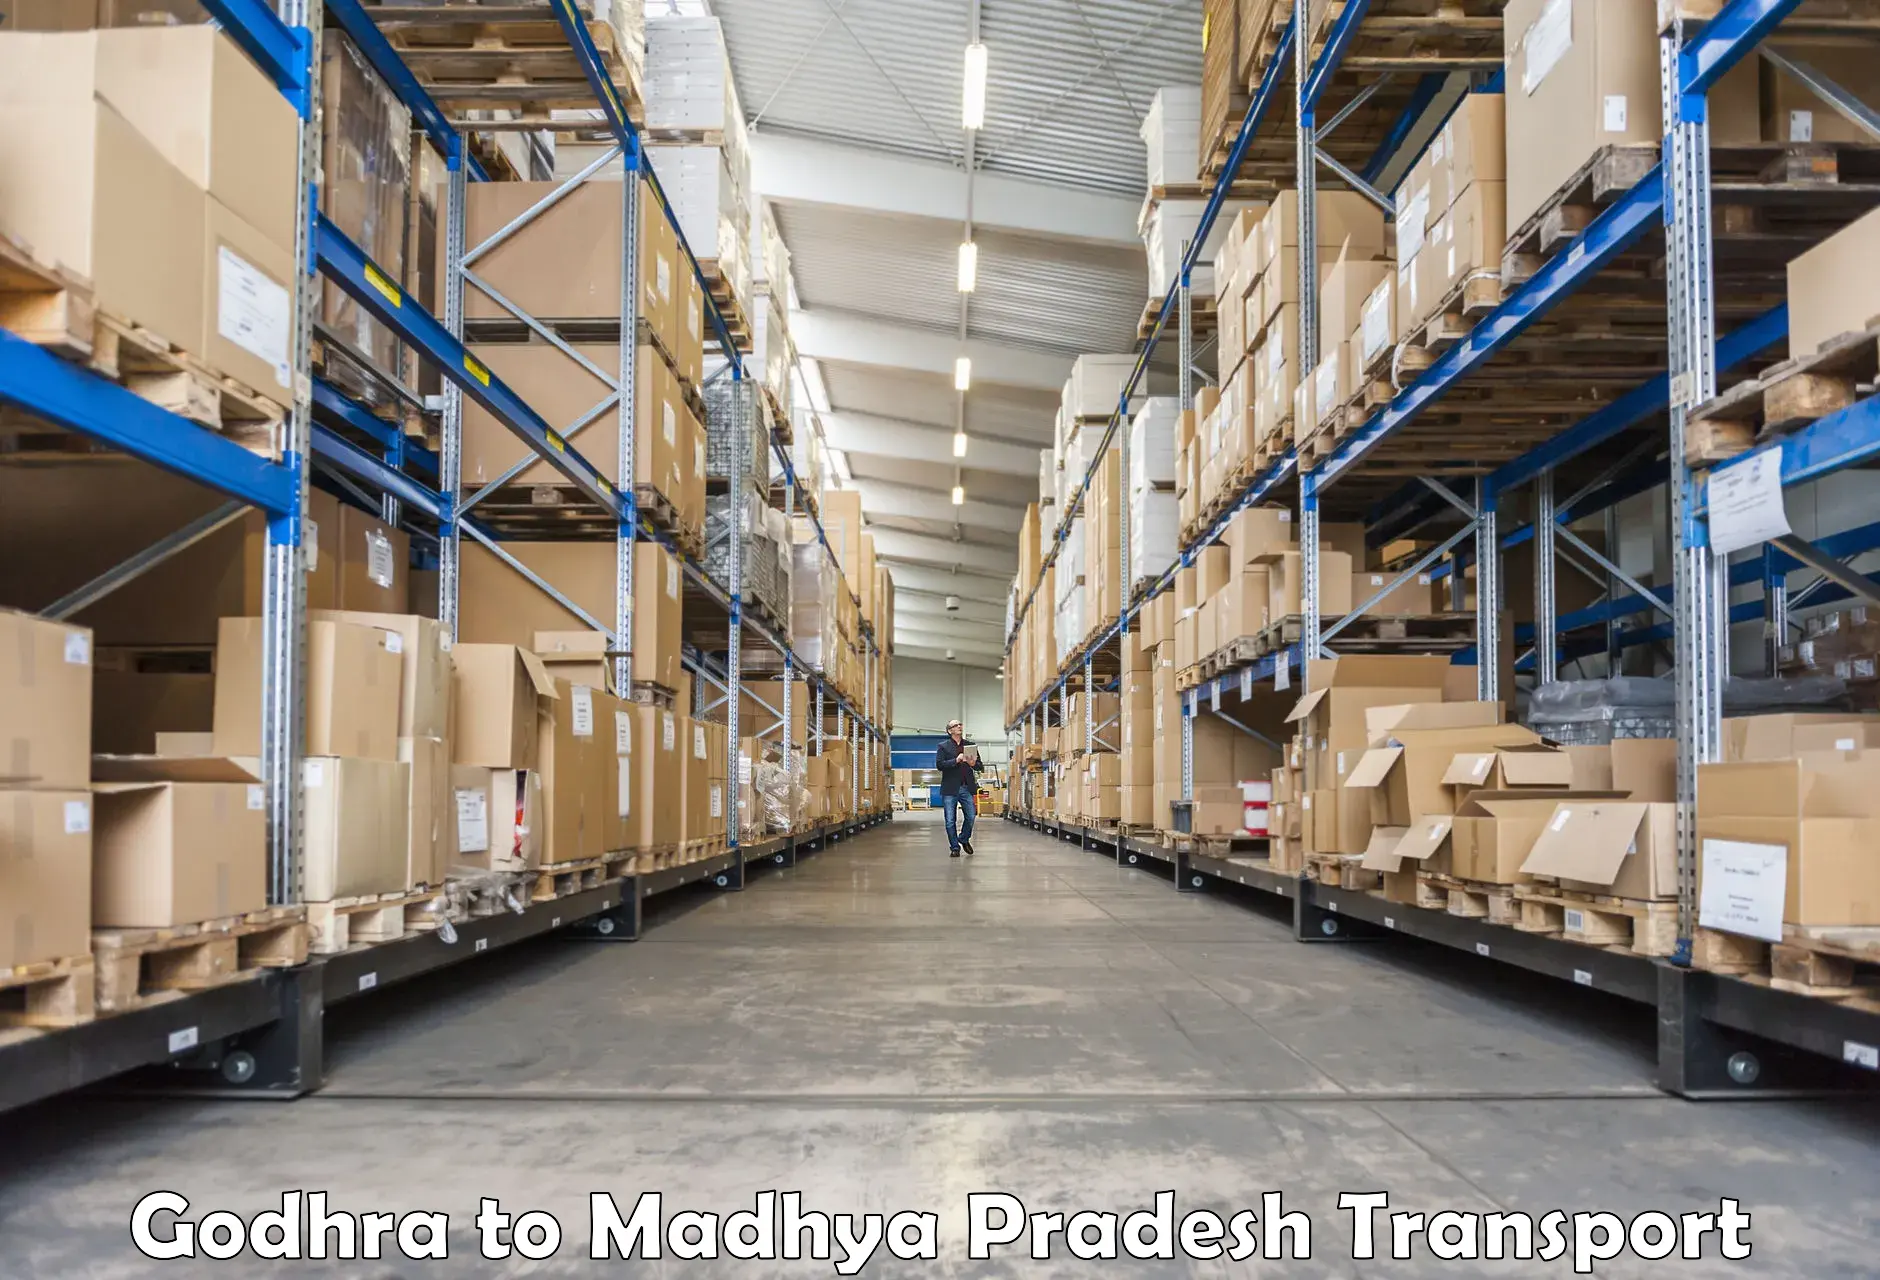 Transport in sharing Godhra to Sagar